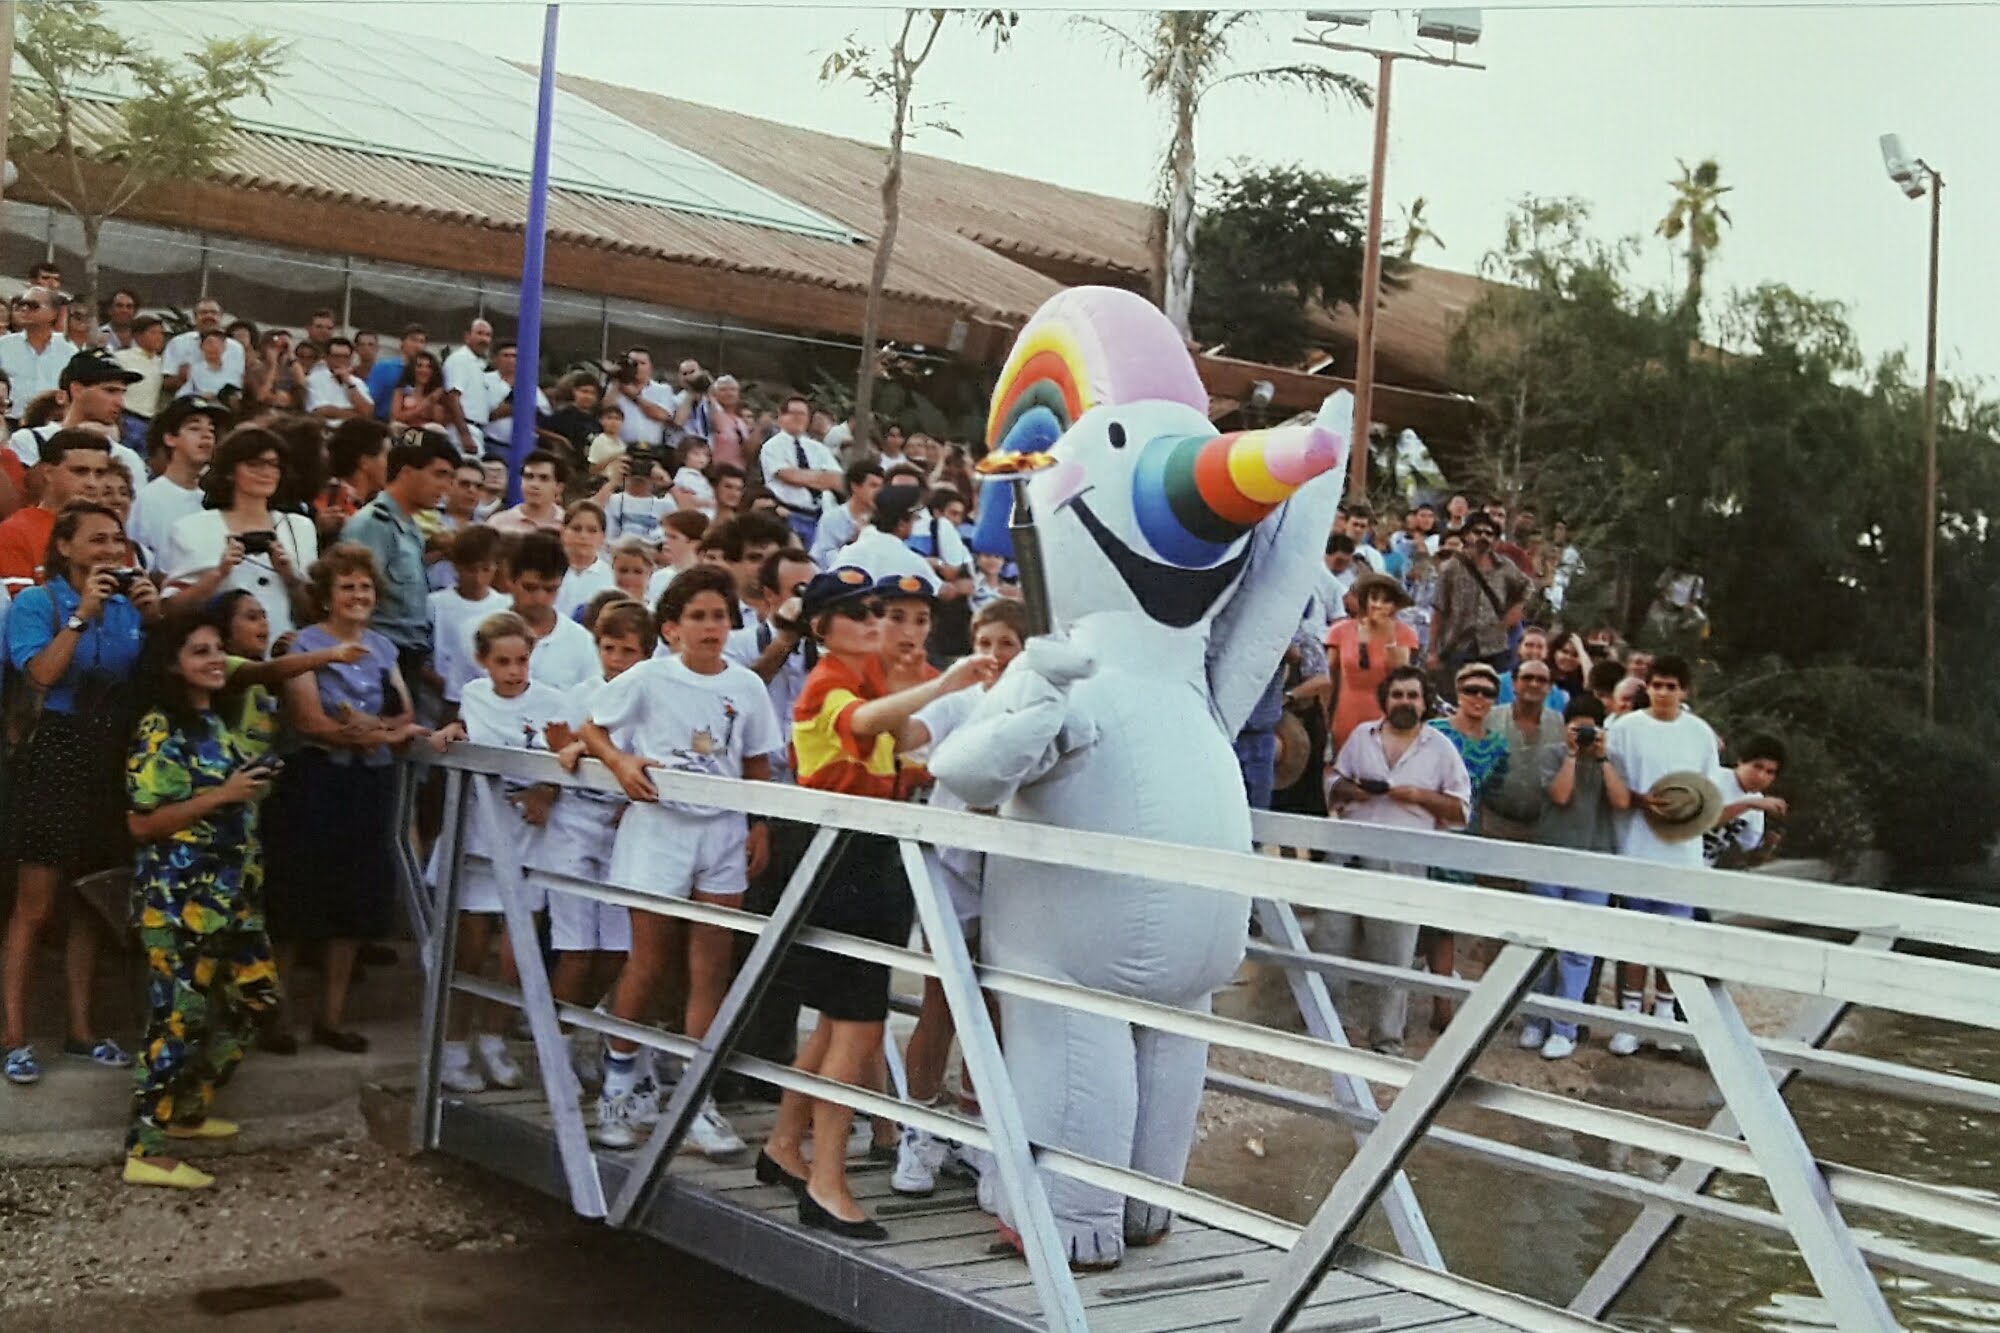 Una foto de Curro durante la Expo92 publicada por la fundación Legado Expo.